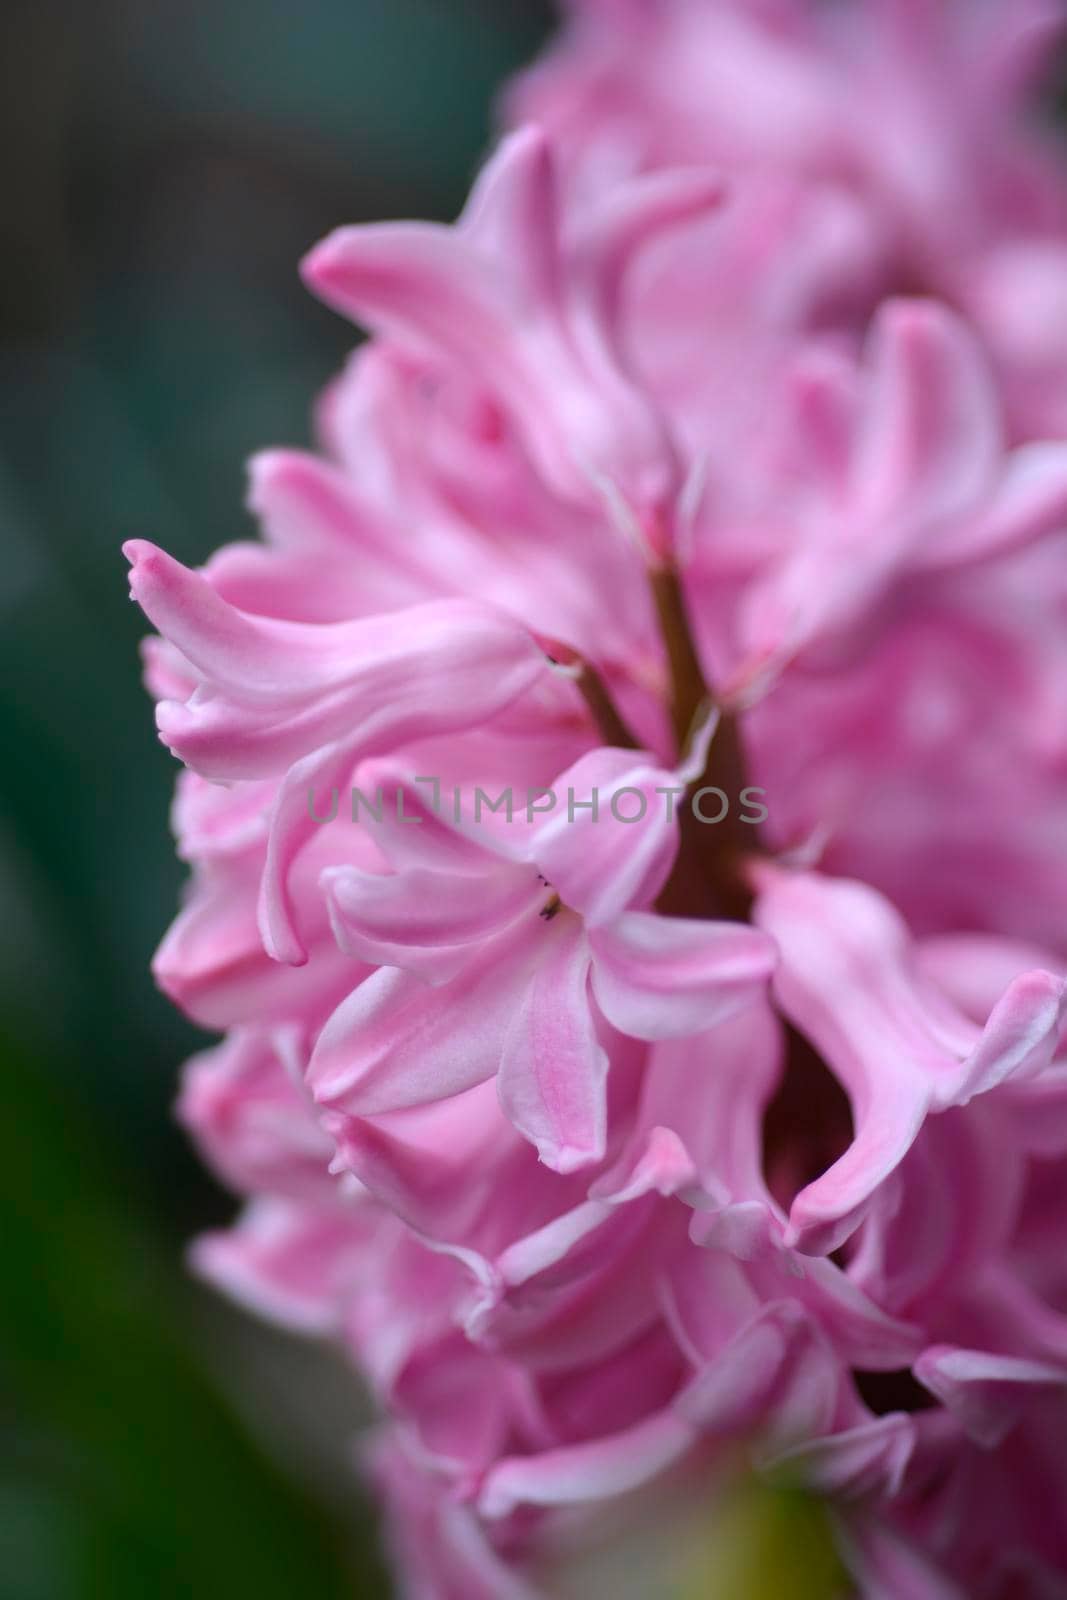 Common hyacinth flower - Latin name - Hyacinthus orientalis